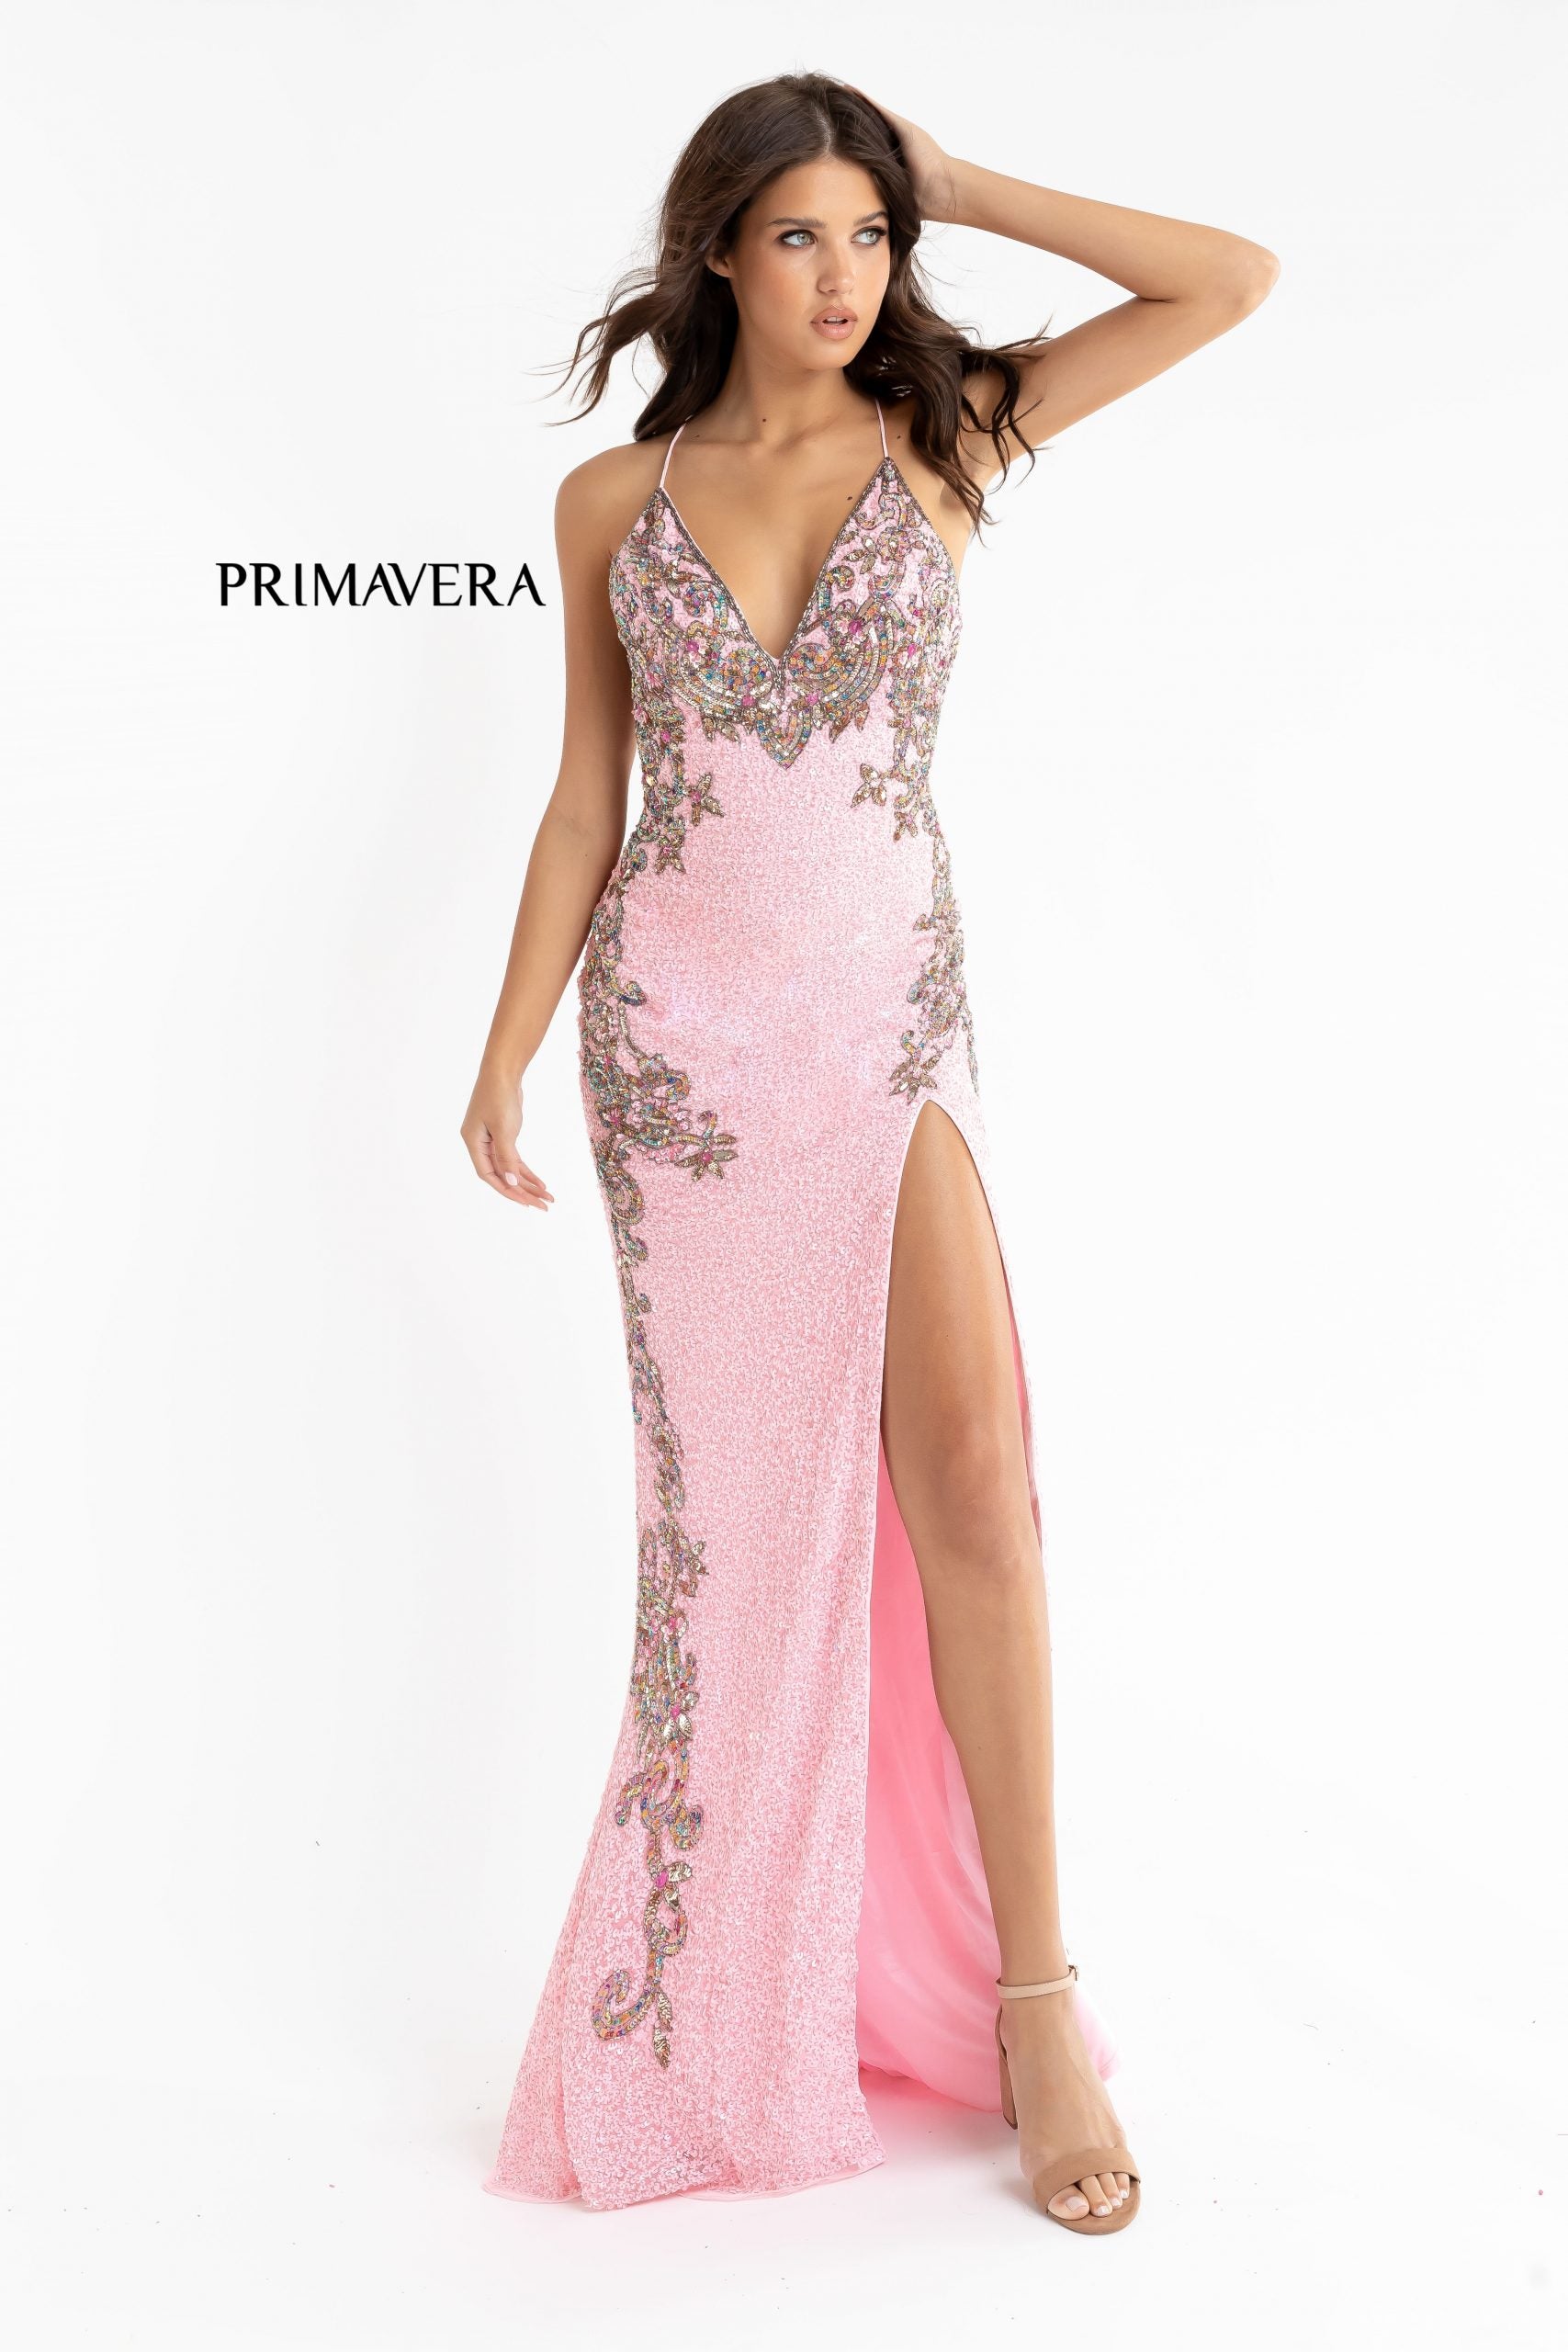 Primavera-couture-3211-PINK-prom-dress-front-prom-dress-v-neckline-floral-sequins-lace-up-tie-back-slit